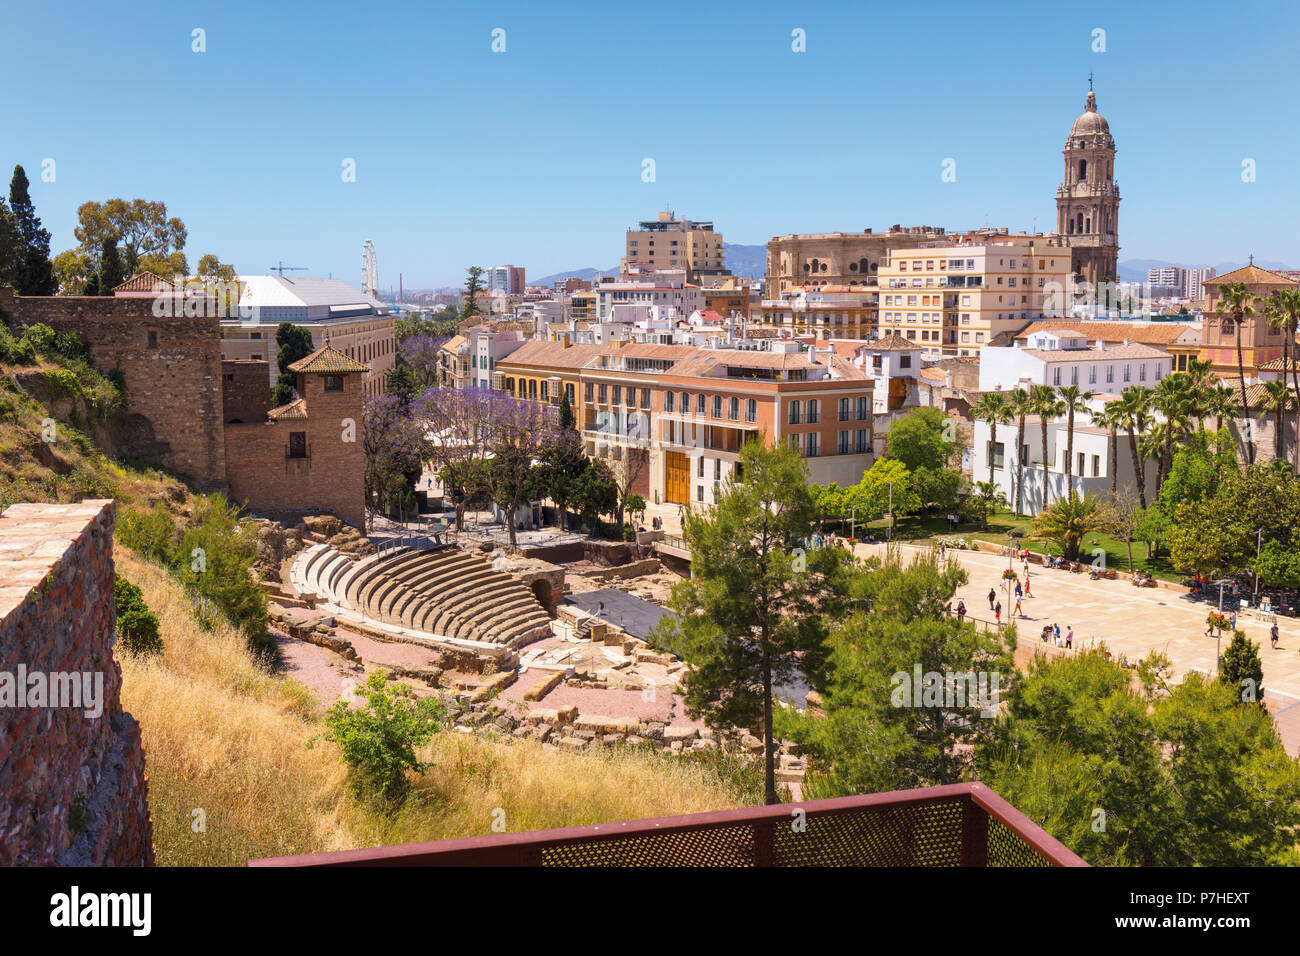 Malaga, Costa del Sol, Provinz Malaga, Andalusien, Südspanien. Blick auf die Stadt, das römische Theater und die Kathedrale. Die Alcazaba können auf der linken Seite gesehen werden. Stockfoto